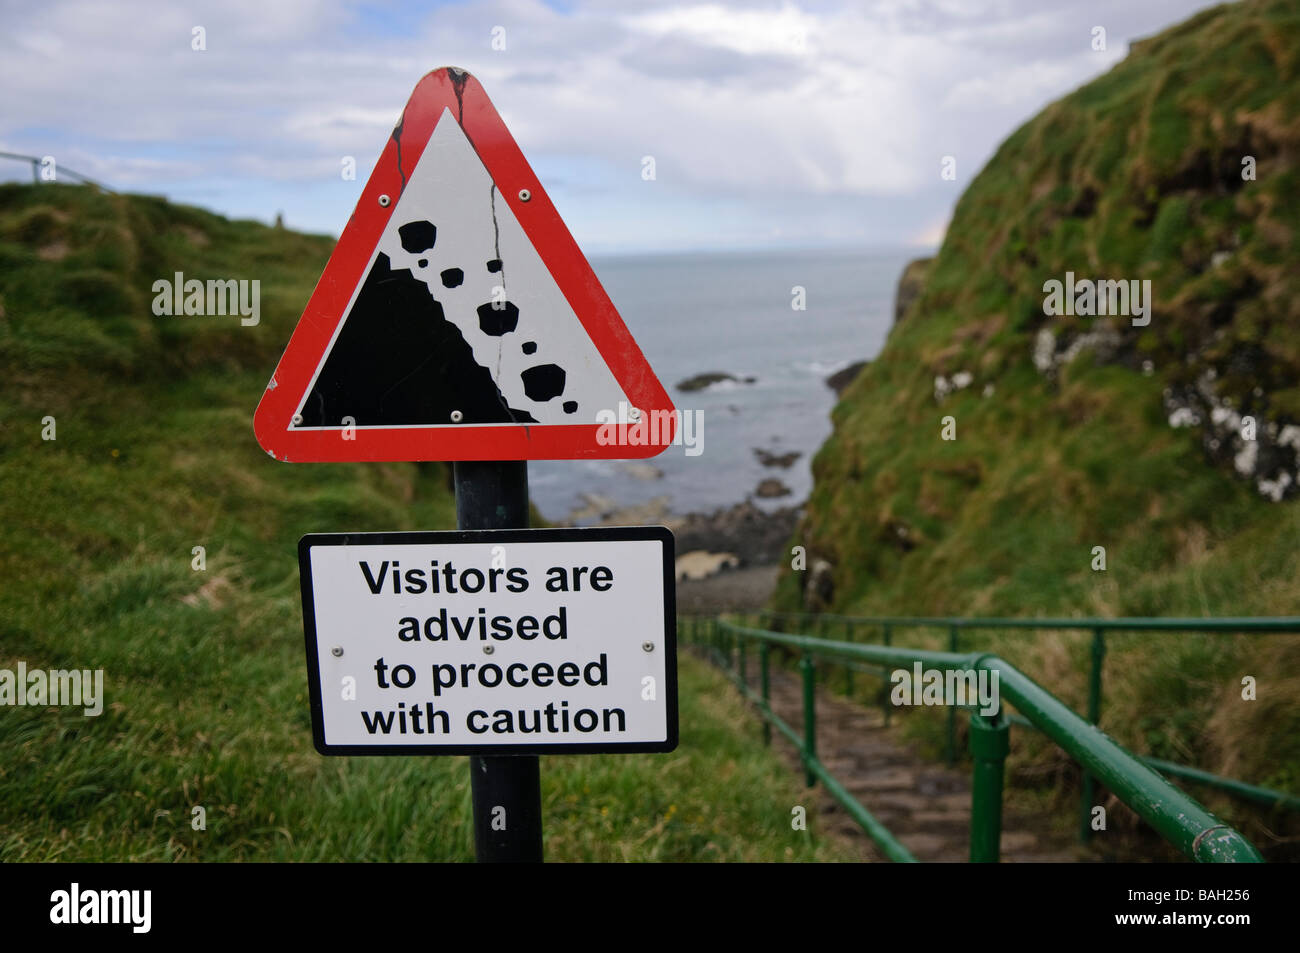 Les chutes de pierres signe sur un chemin à côté d'une falaise en bord de mer 'avertissement Les visiteurs sont conseillés de procéder avec prudence. Banque D'Images